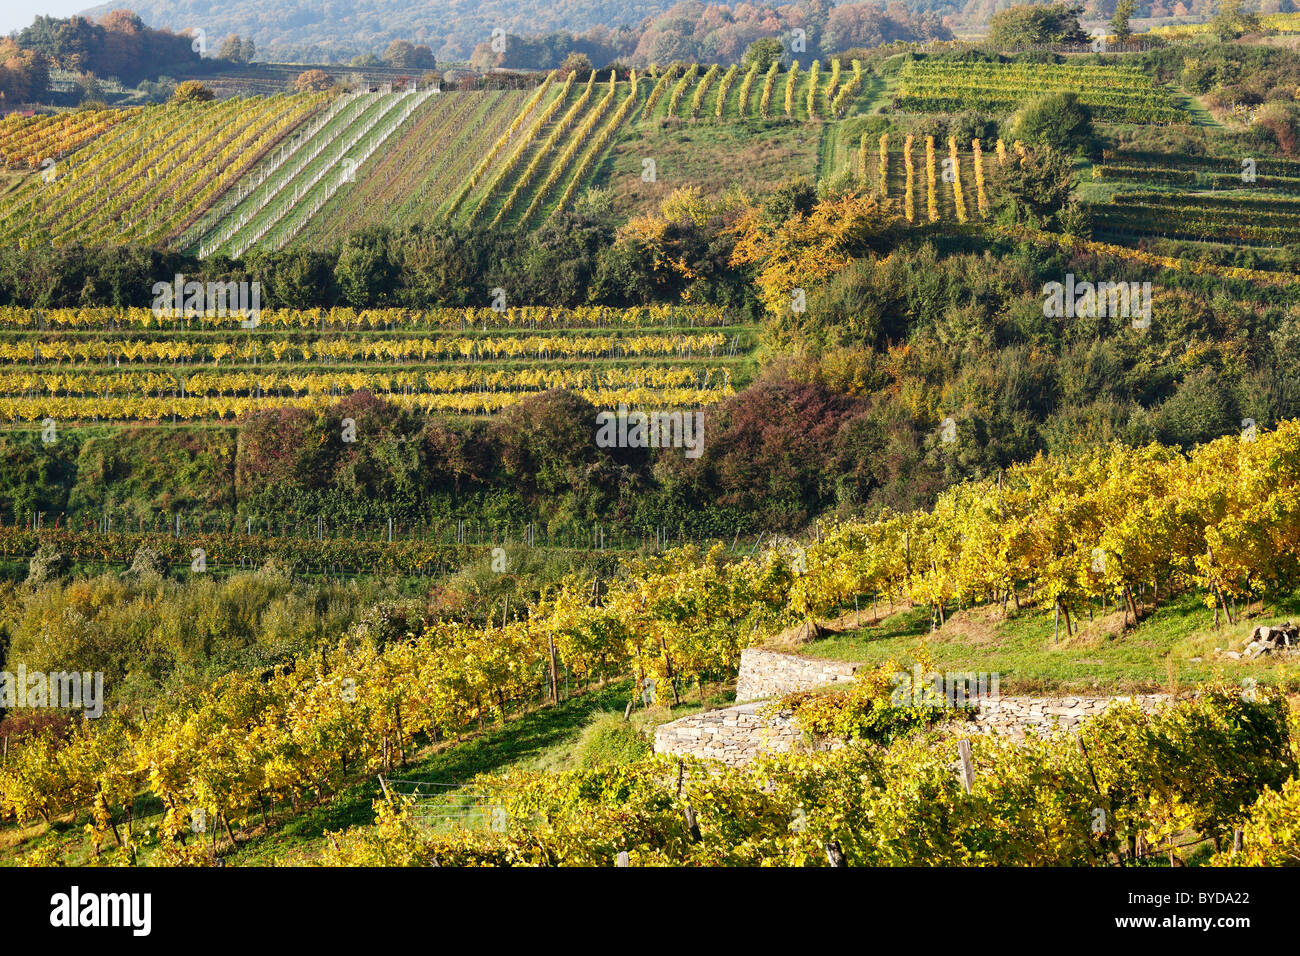 Vineyards, Weissenkirchen in the Wachau valley, Waldviertel region, Lower Austria, Austria, Europe Stock Photo